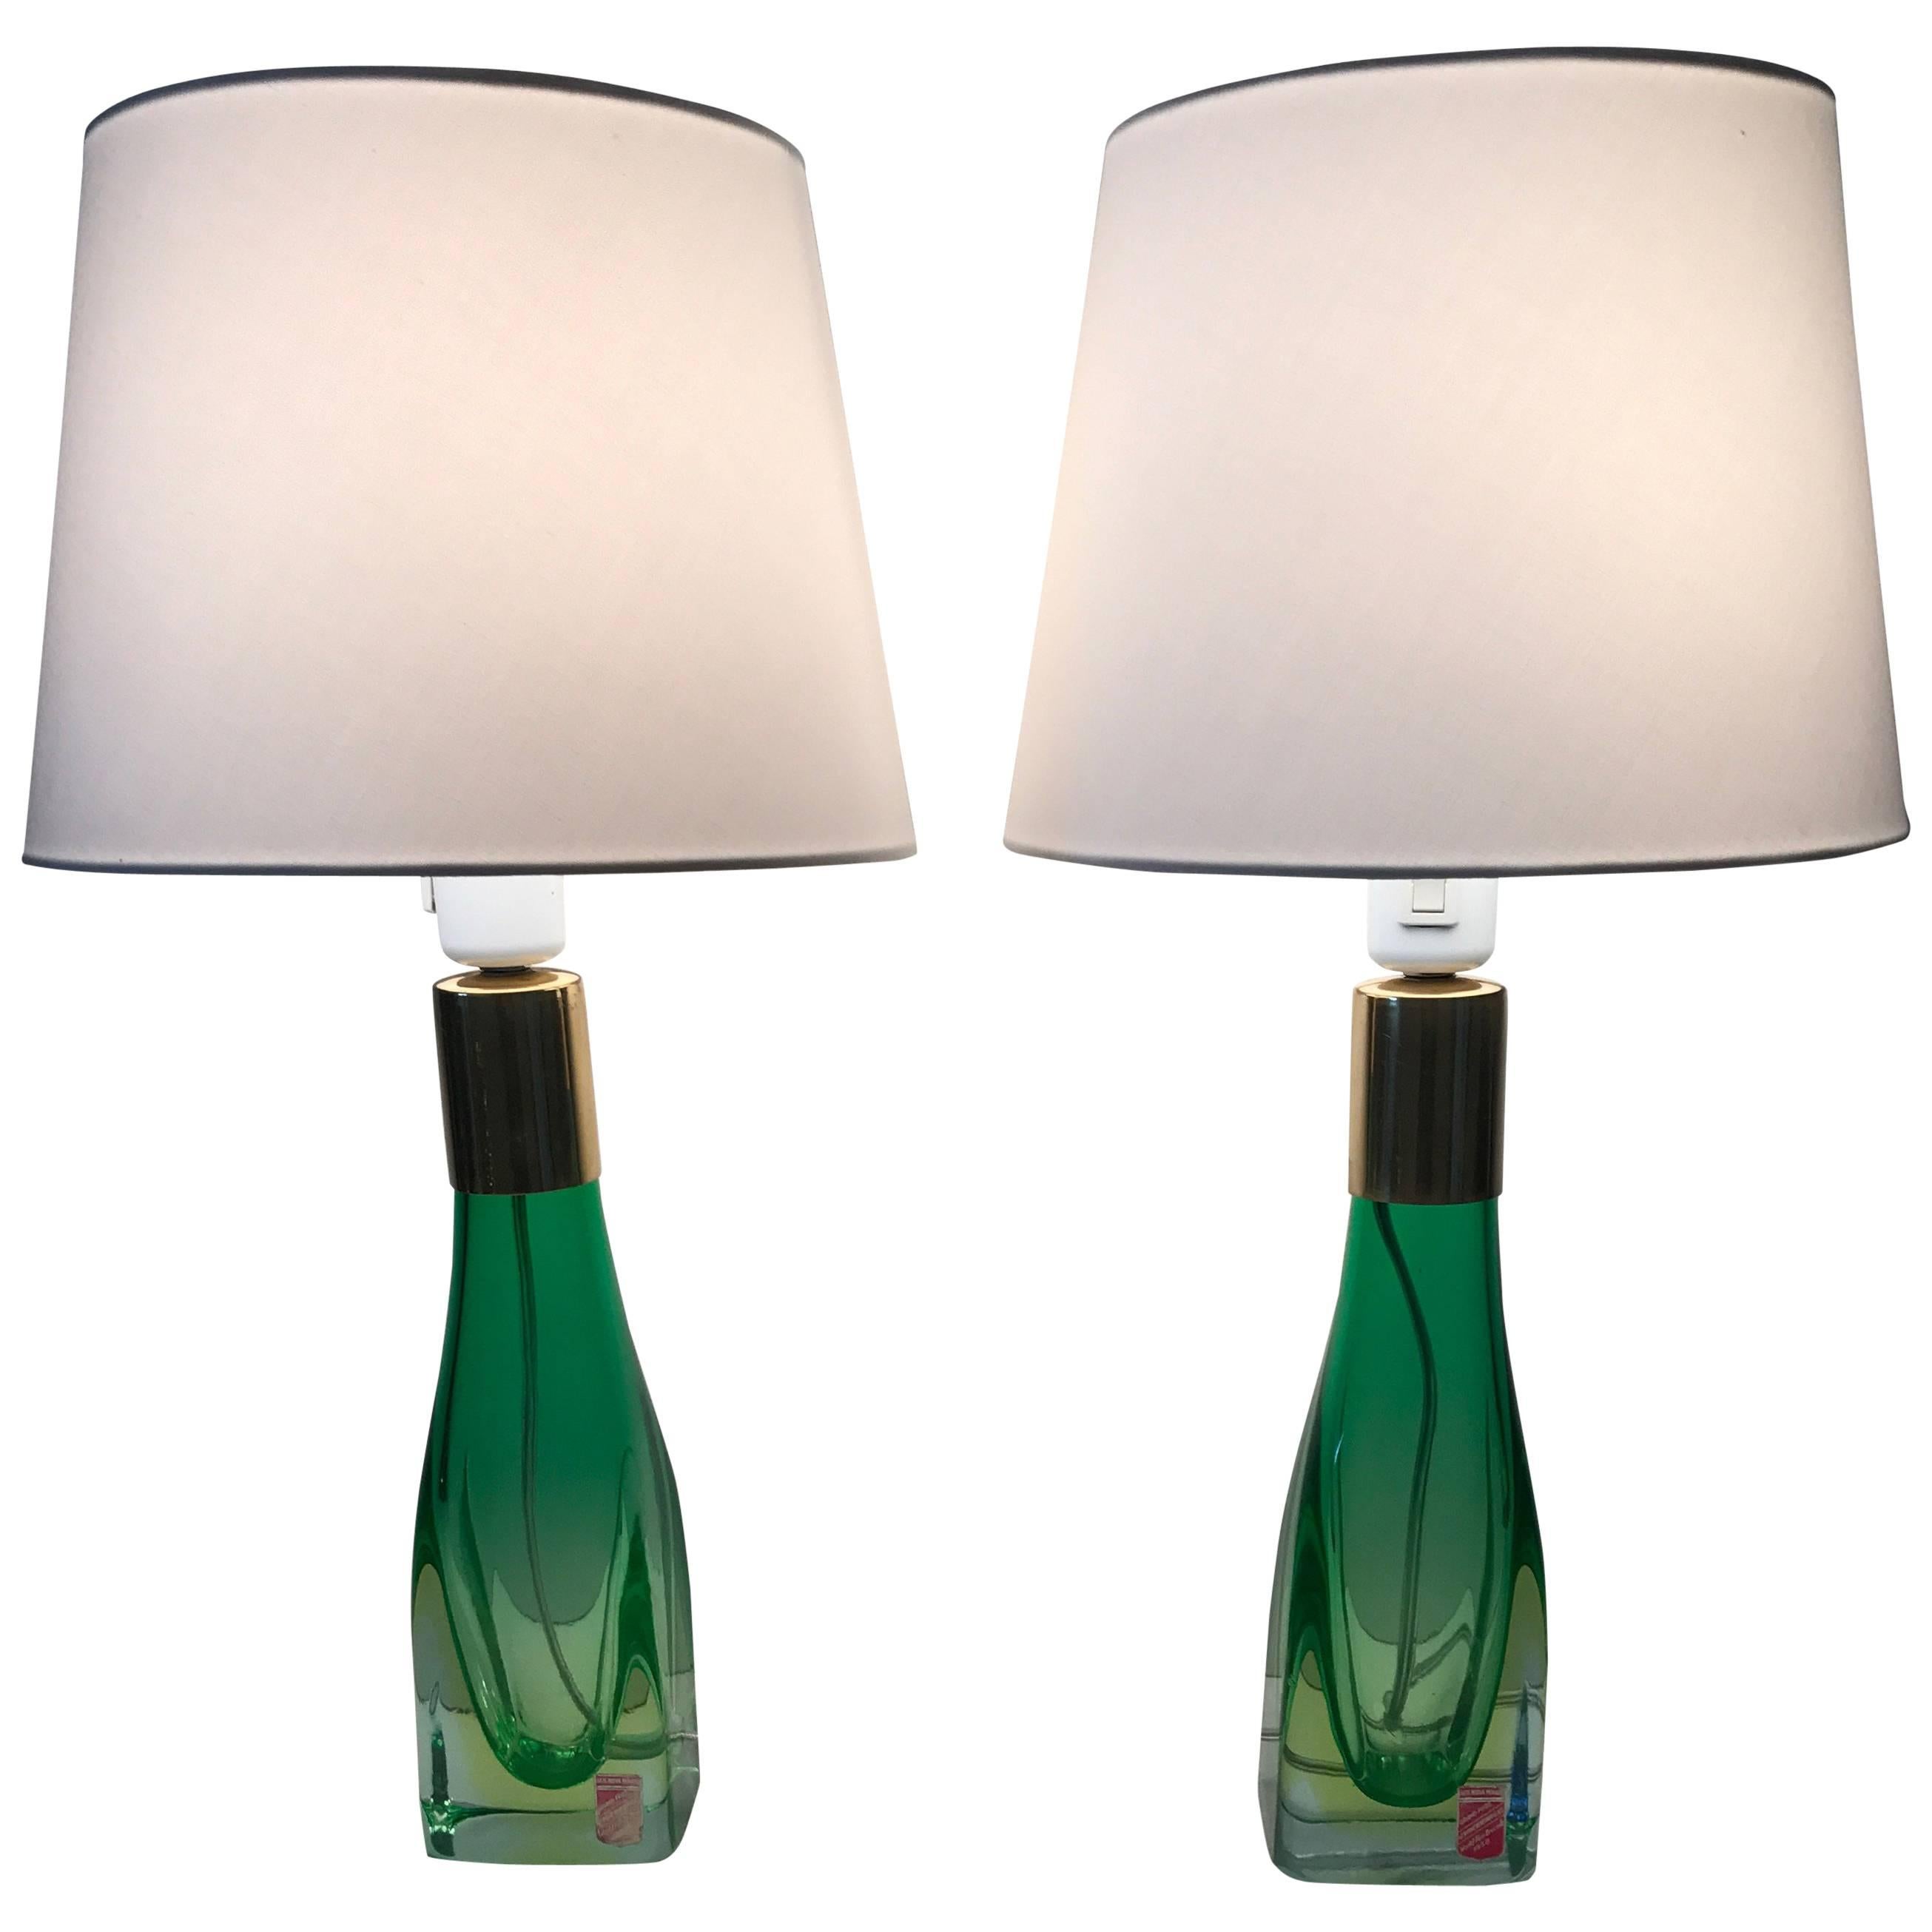 Pair of Italian Venetian Murano Art Glass Table Lamps 1958 Arte Nuova, Murano